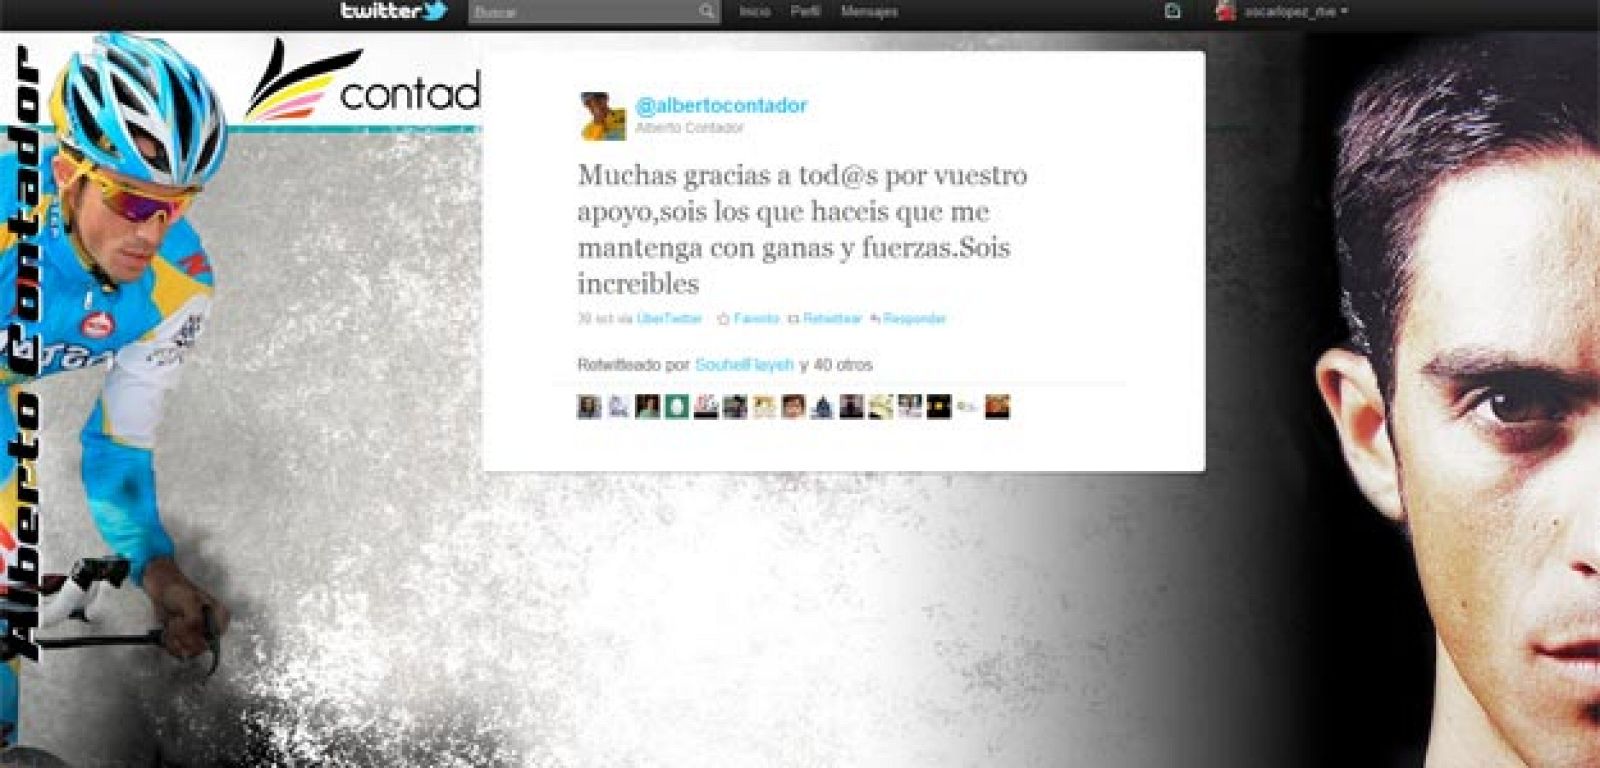 Imagen del último twitter de Contador